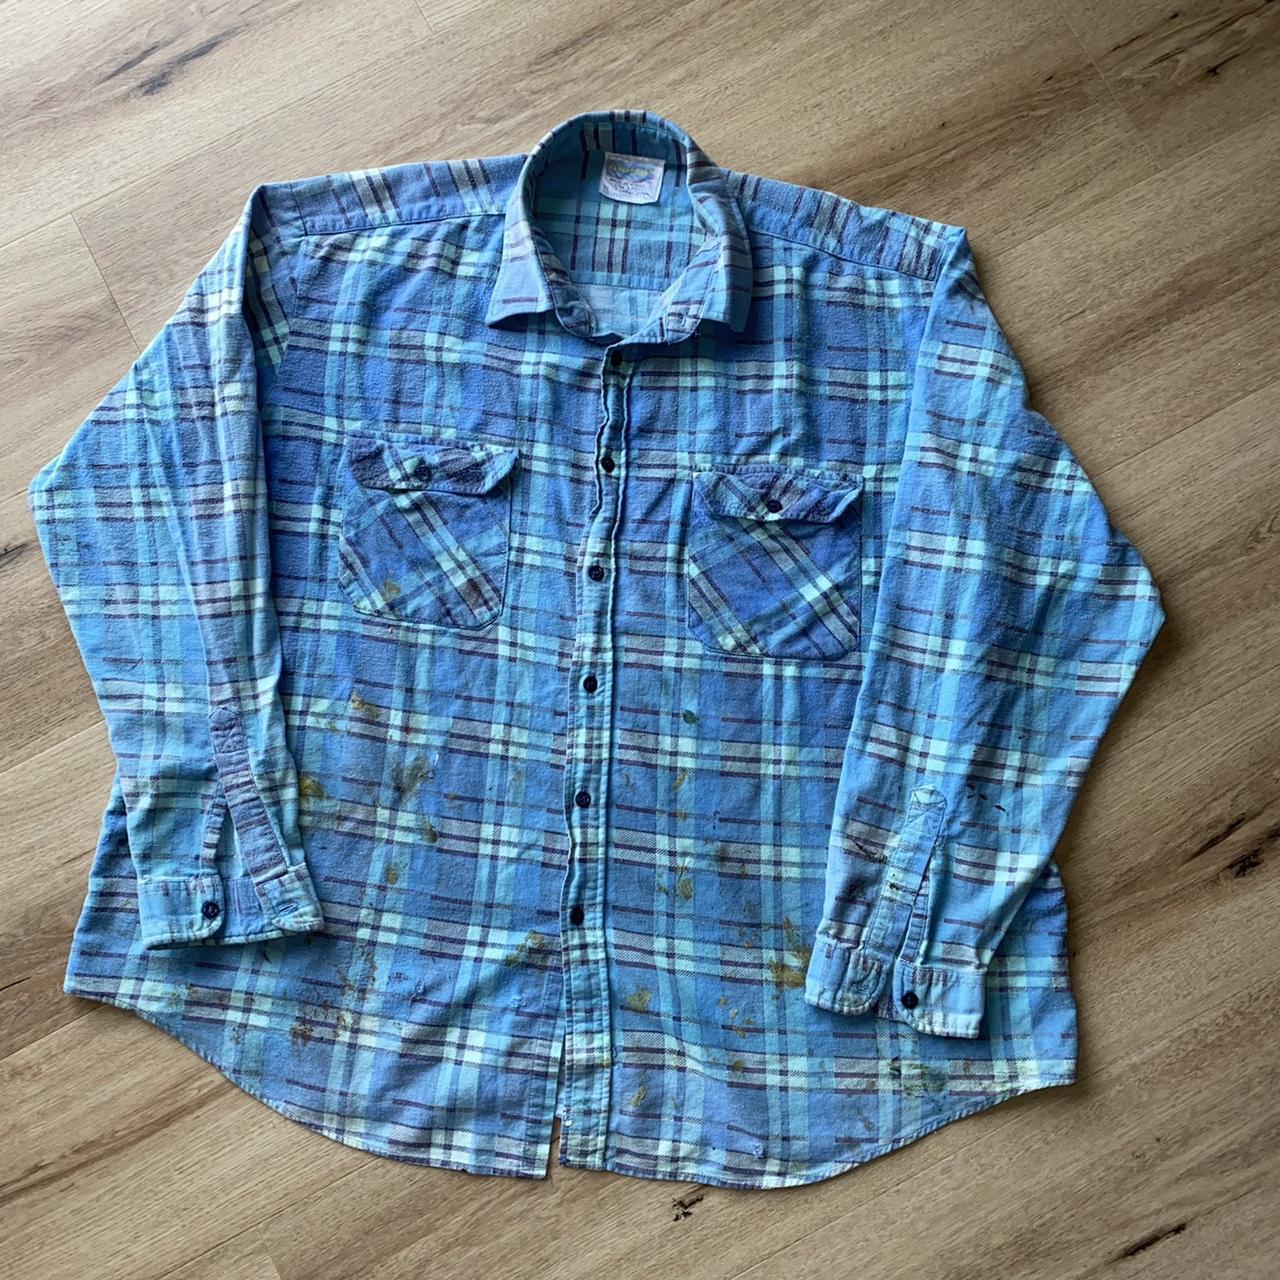 Vintage 90s Flannel Shirt Authentic Aussie Worn In... - Depop